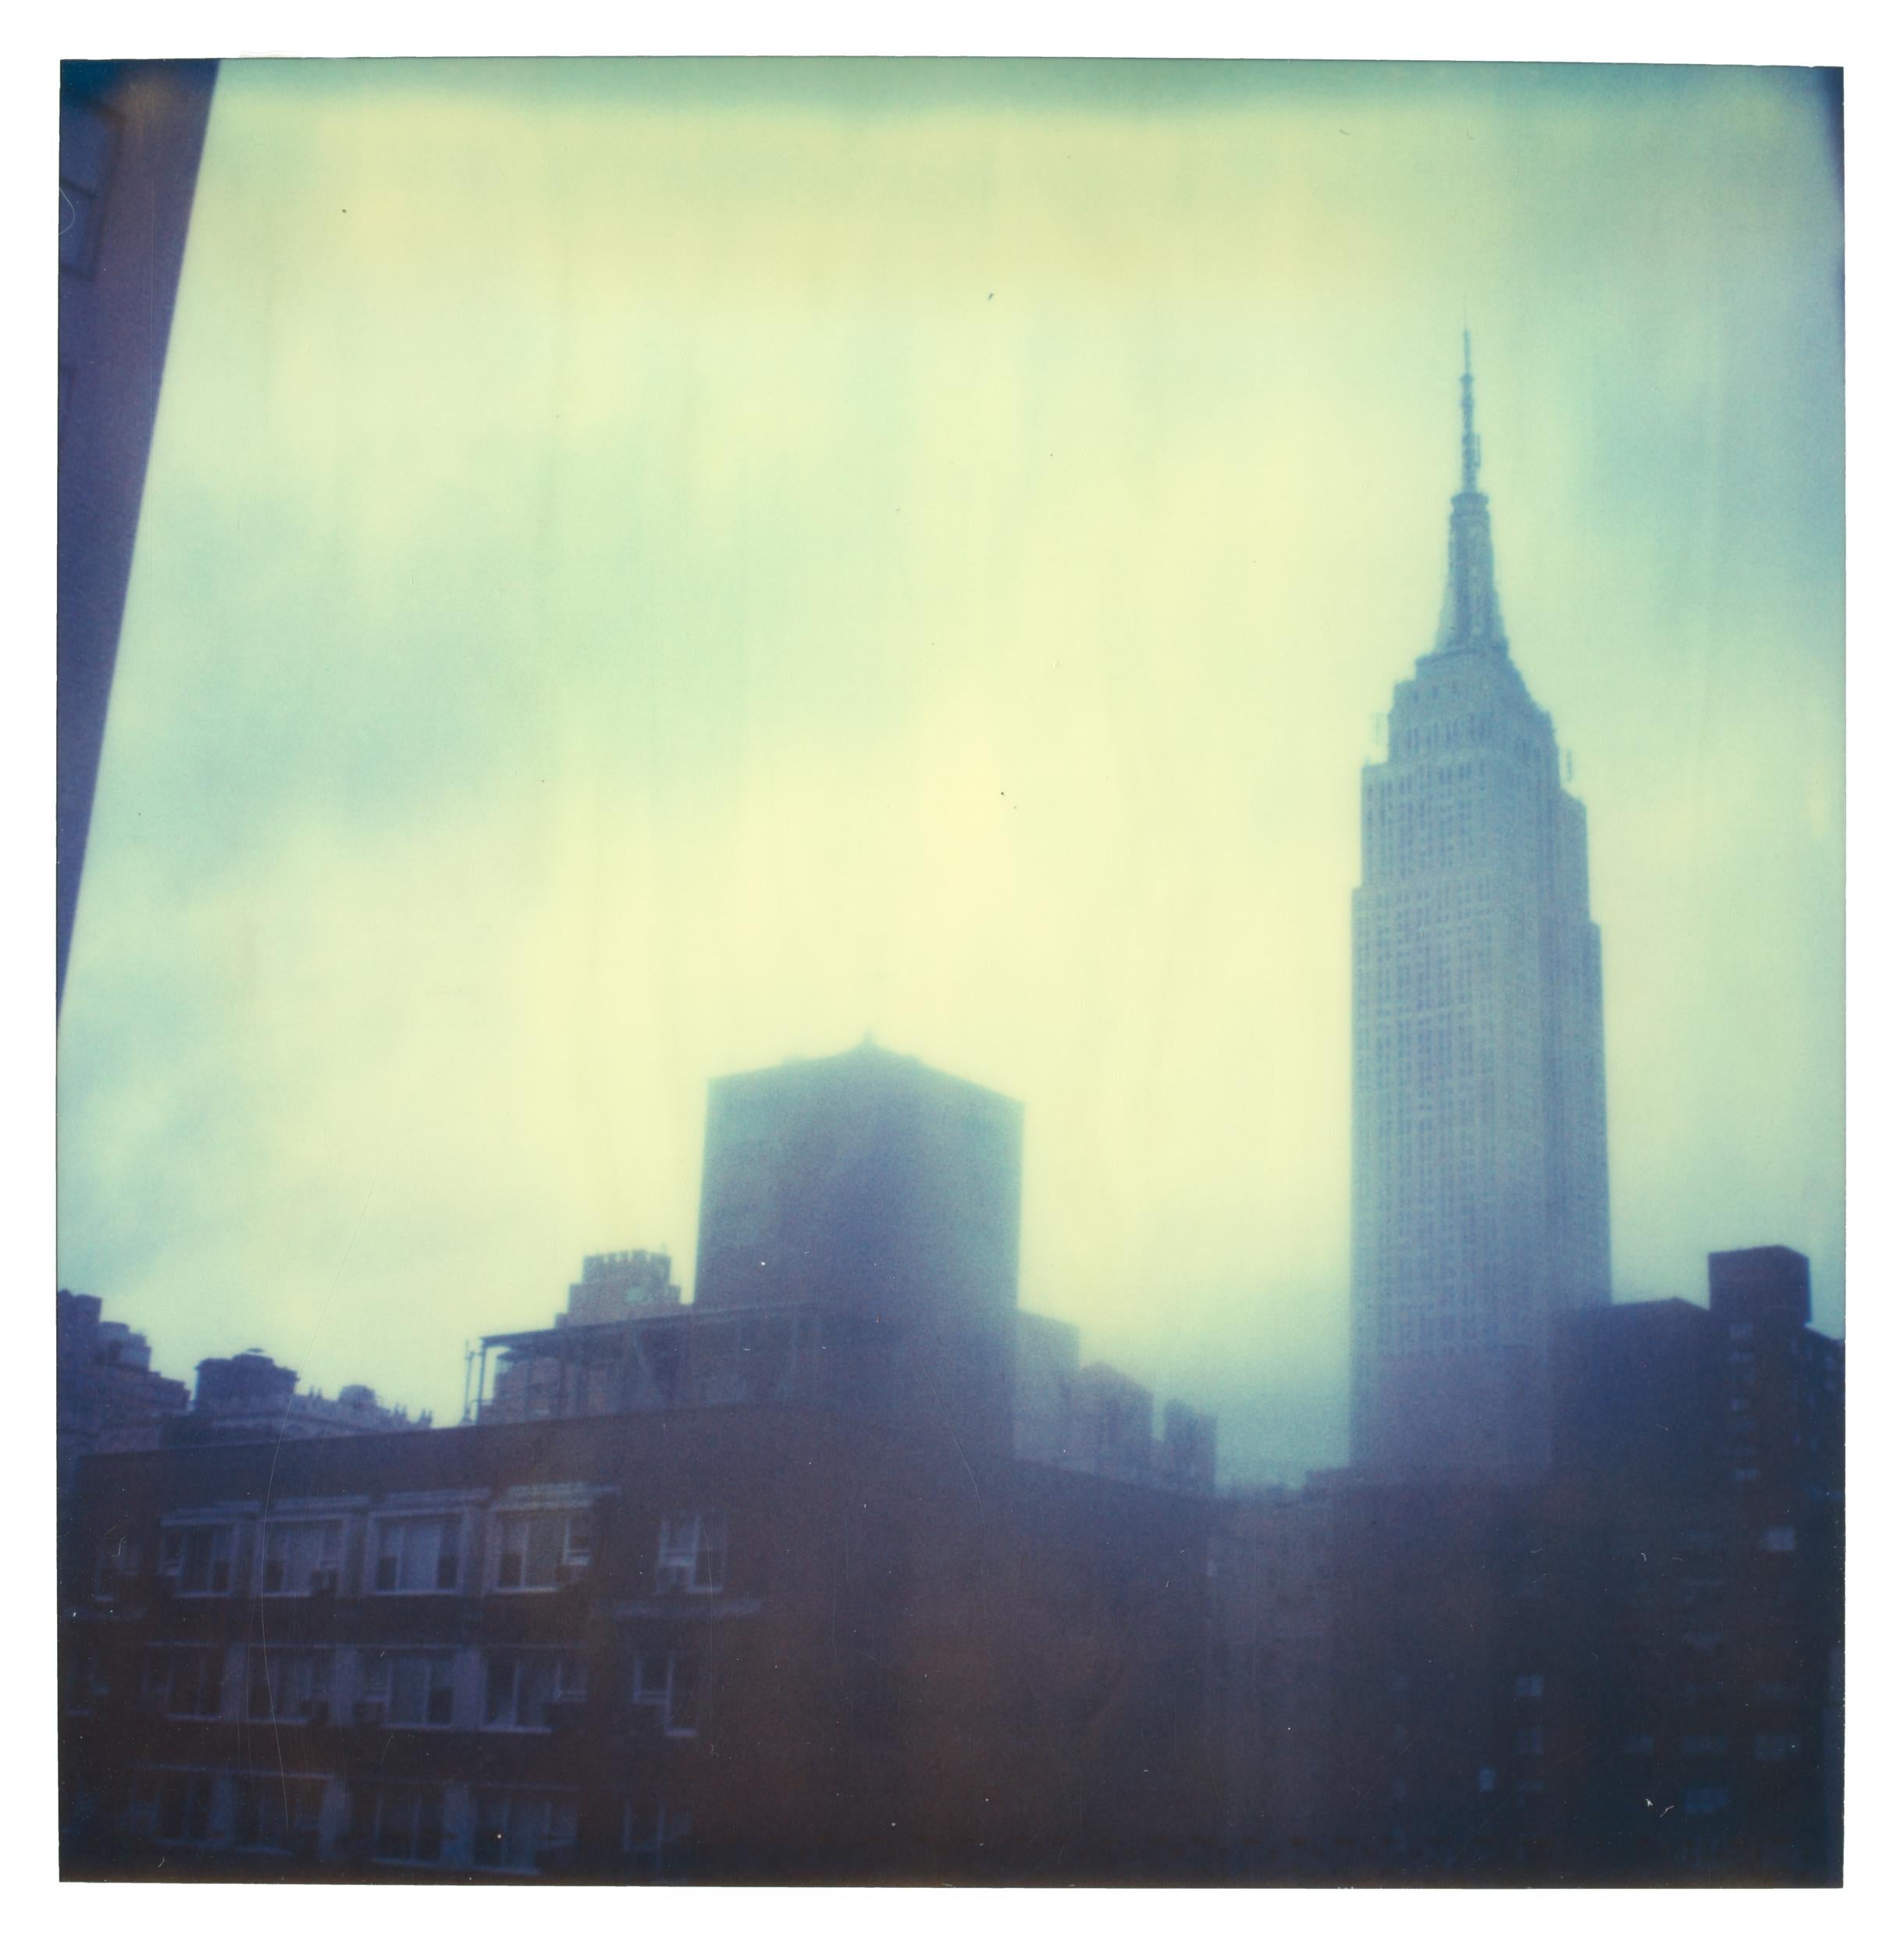 Stefanie Schneider Landscape Photograph - Afternoon Empire (Strange Love) - Polaroid, New York, Empire State Building